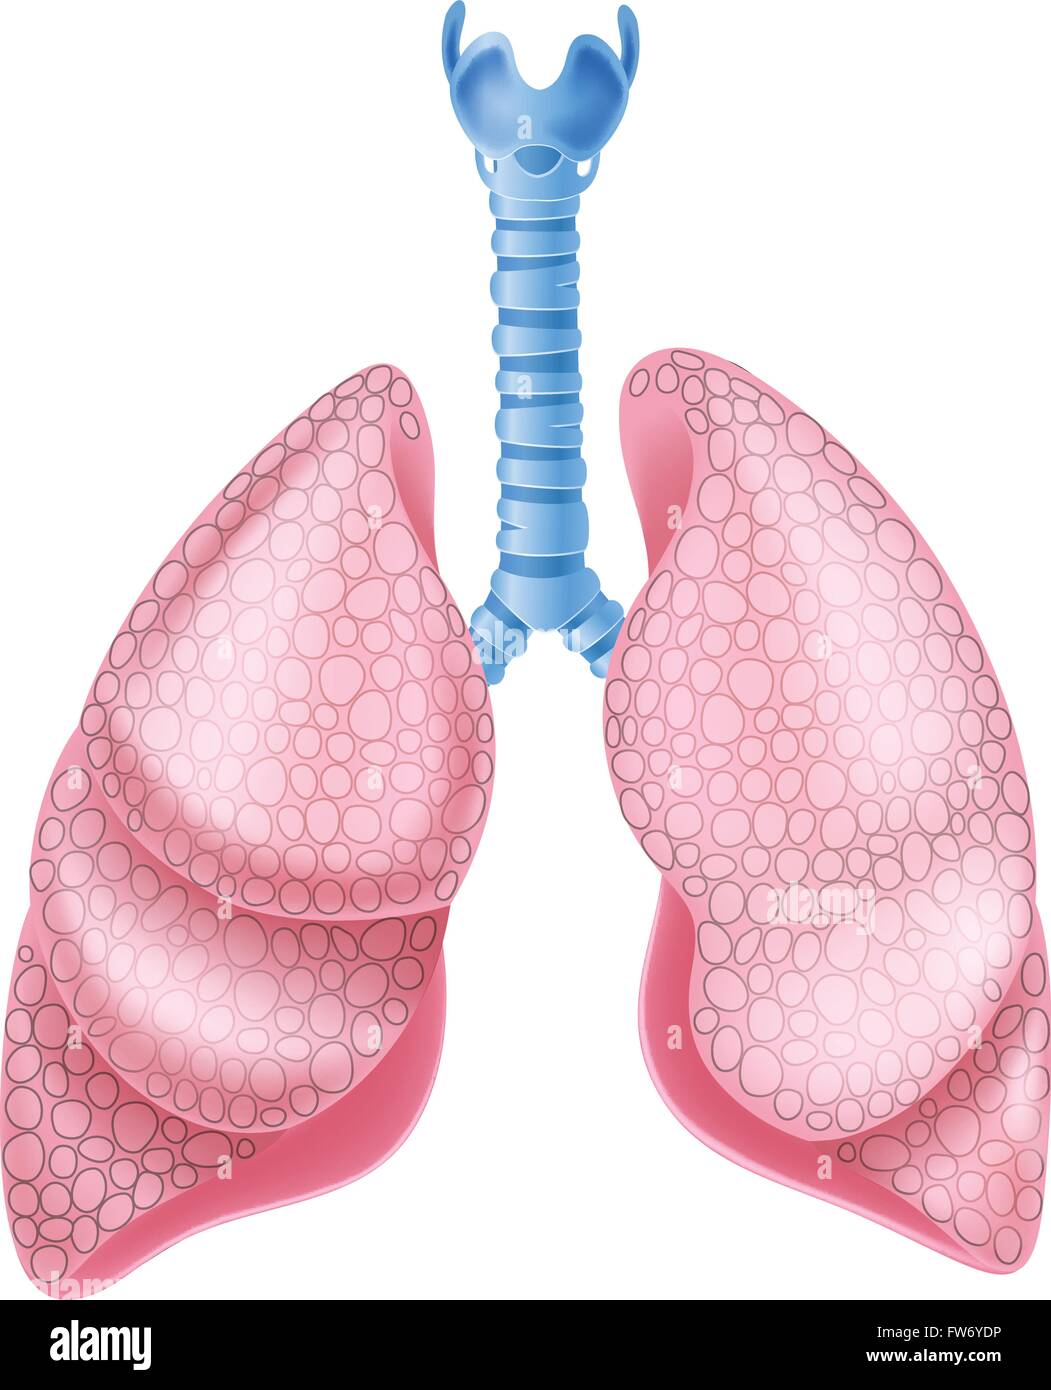 Abbildung der gesunden Lunge Anatomie Stock Vektor